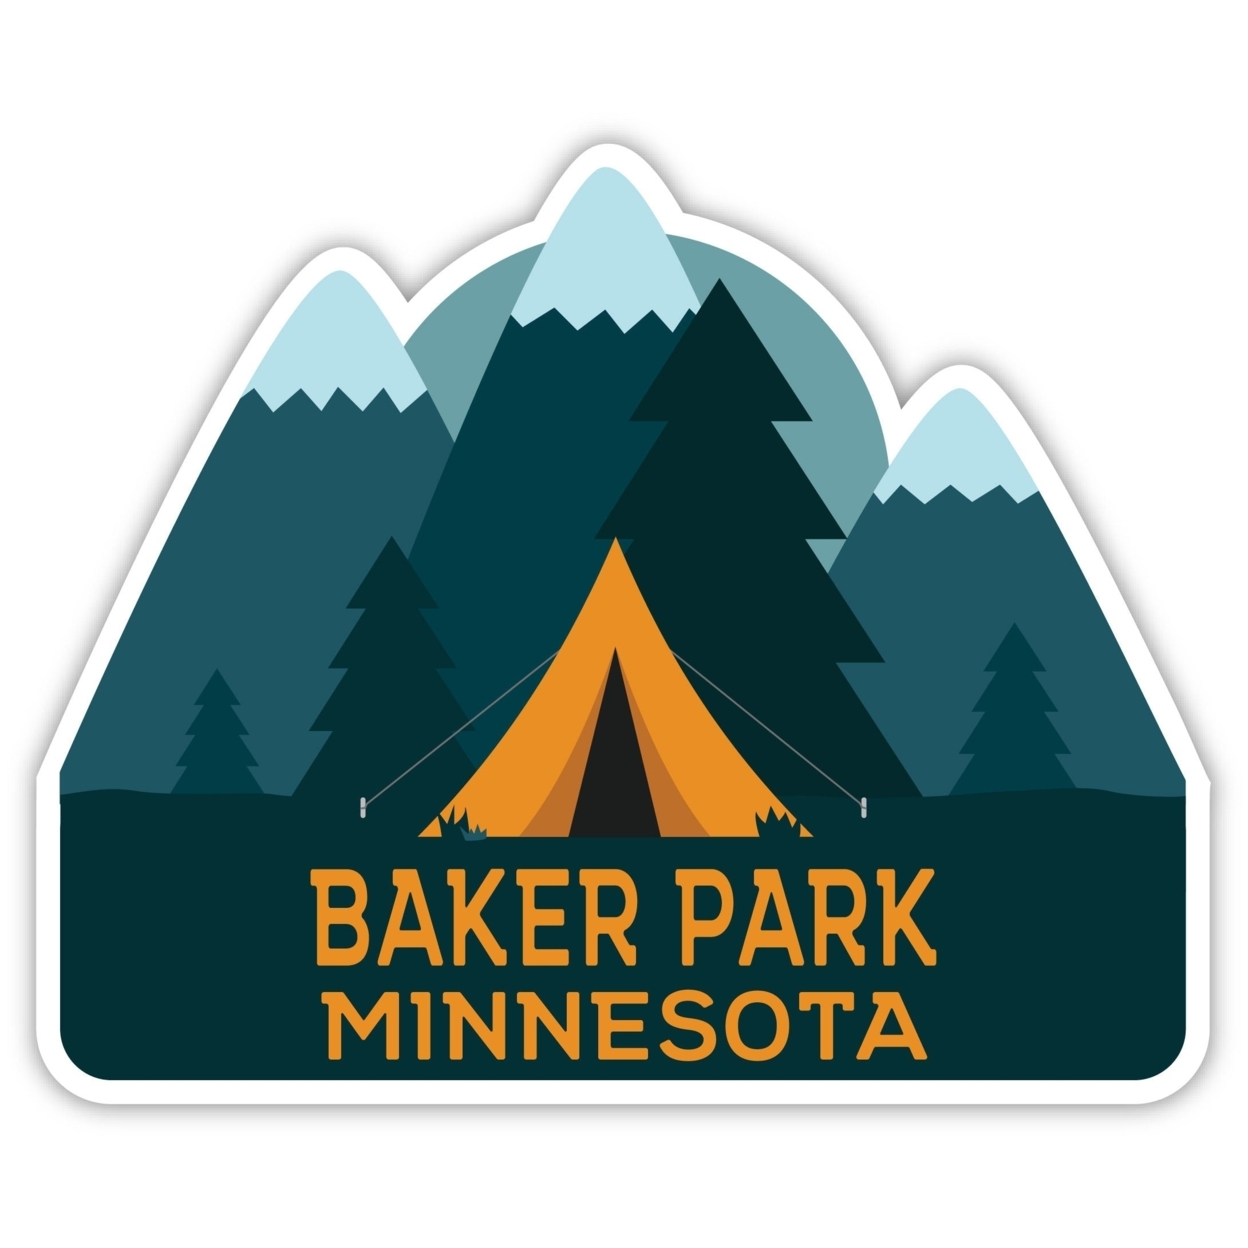 Baker Park Minnesota Souvenir Decorative Stickers (Choose Theme And Size) - Single Unit, 4-Inch, Tent